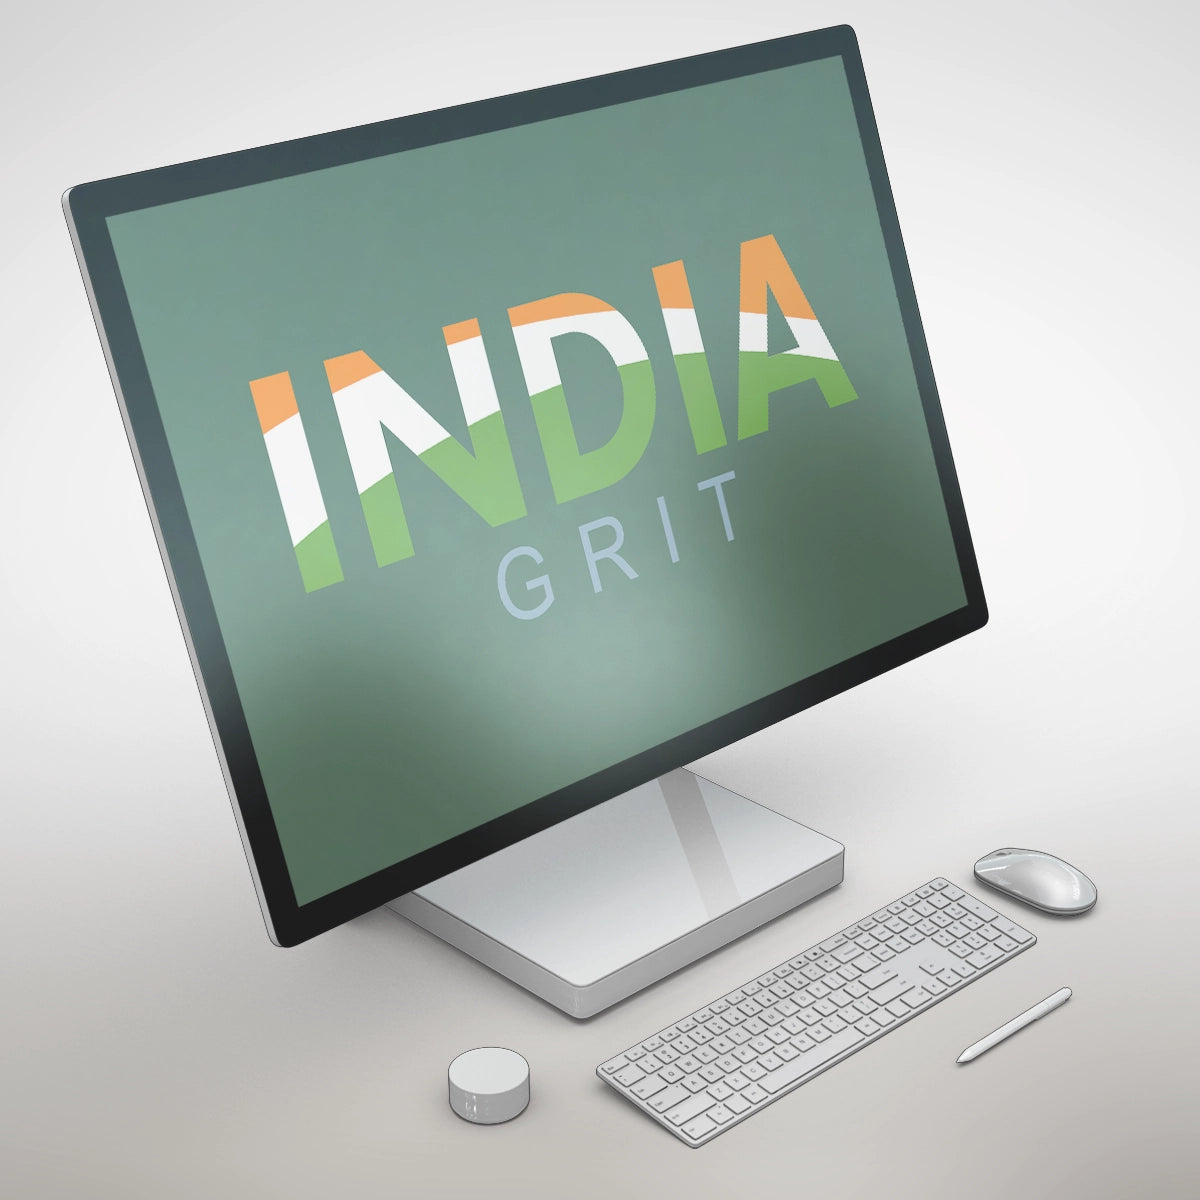 IndiaGrit.com